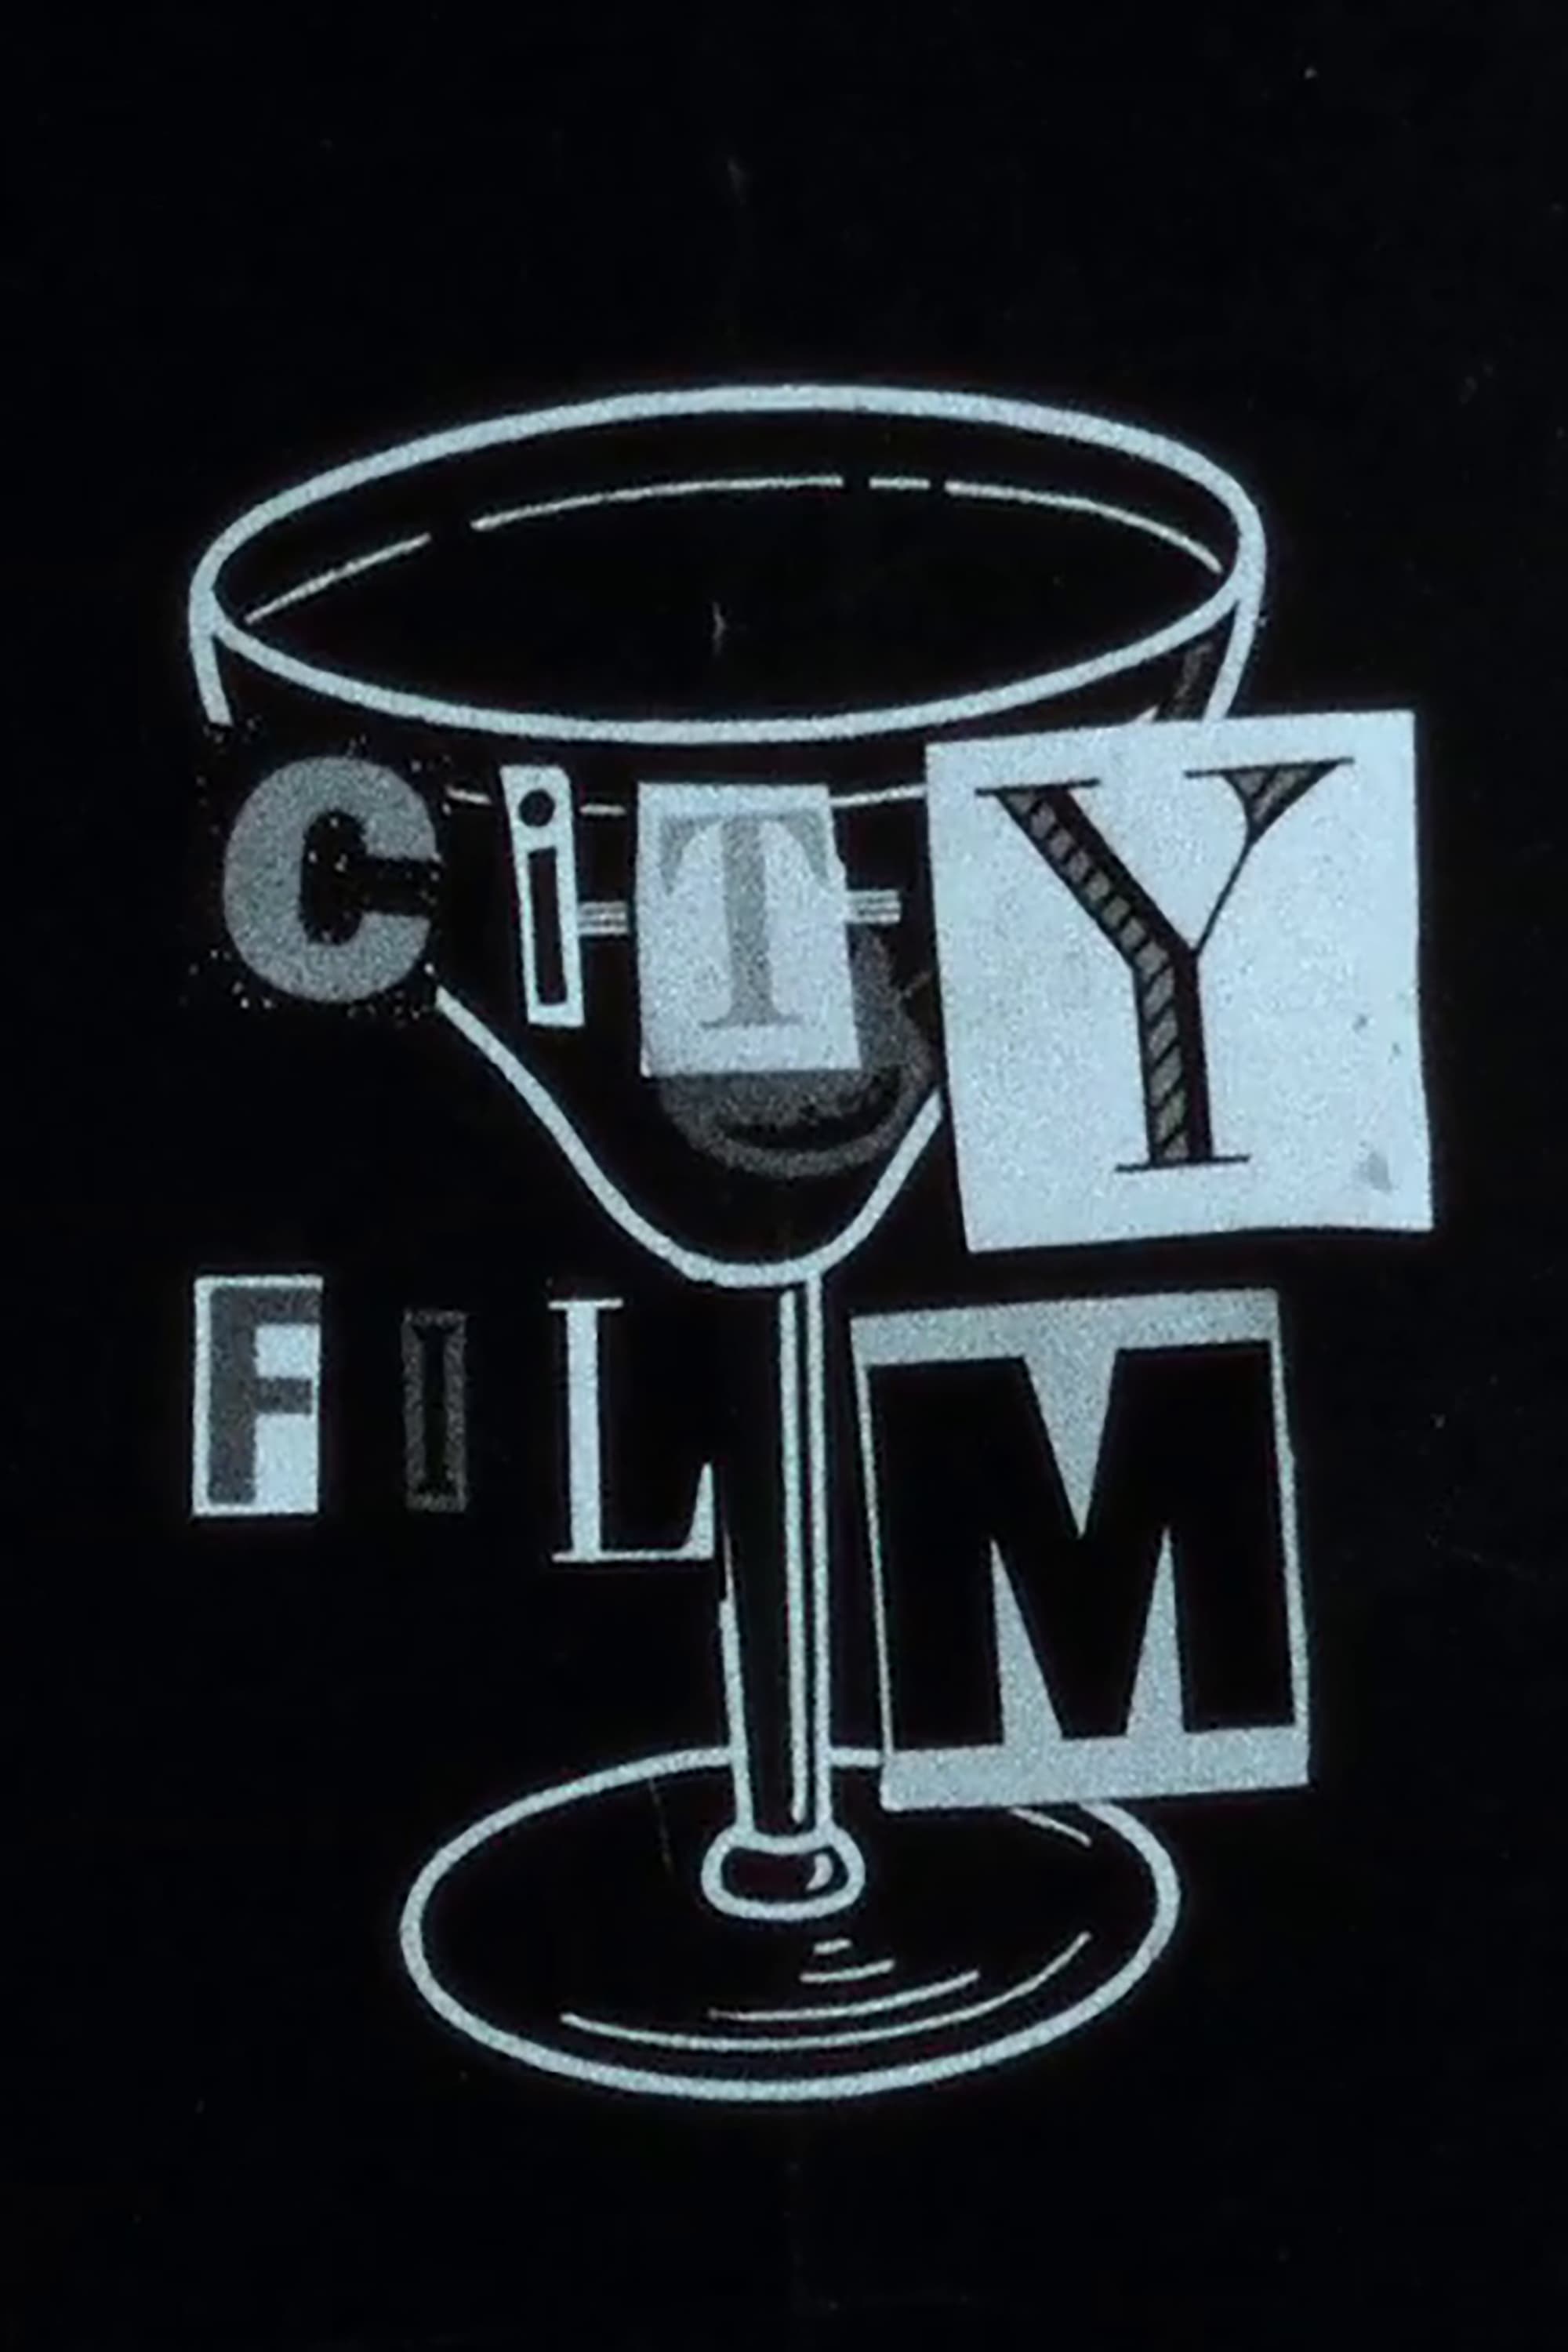 City Film